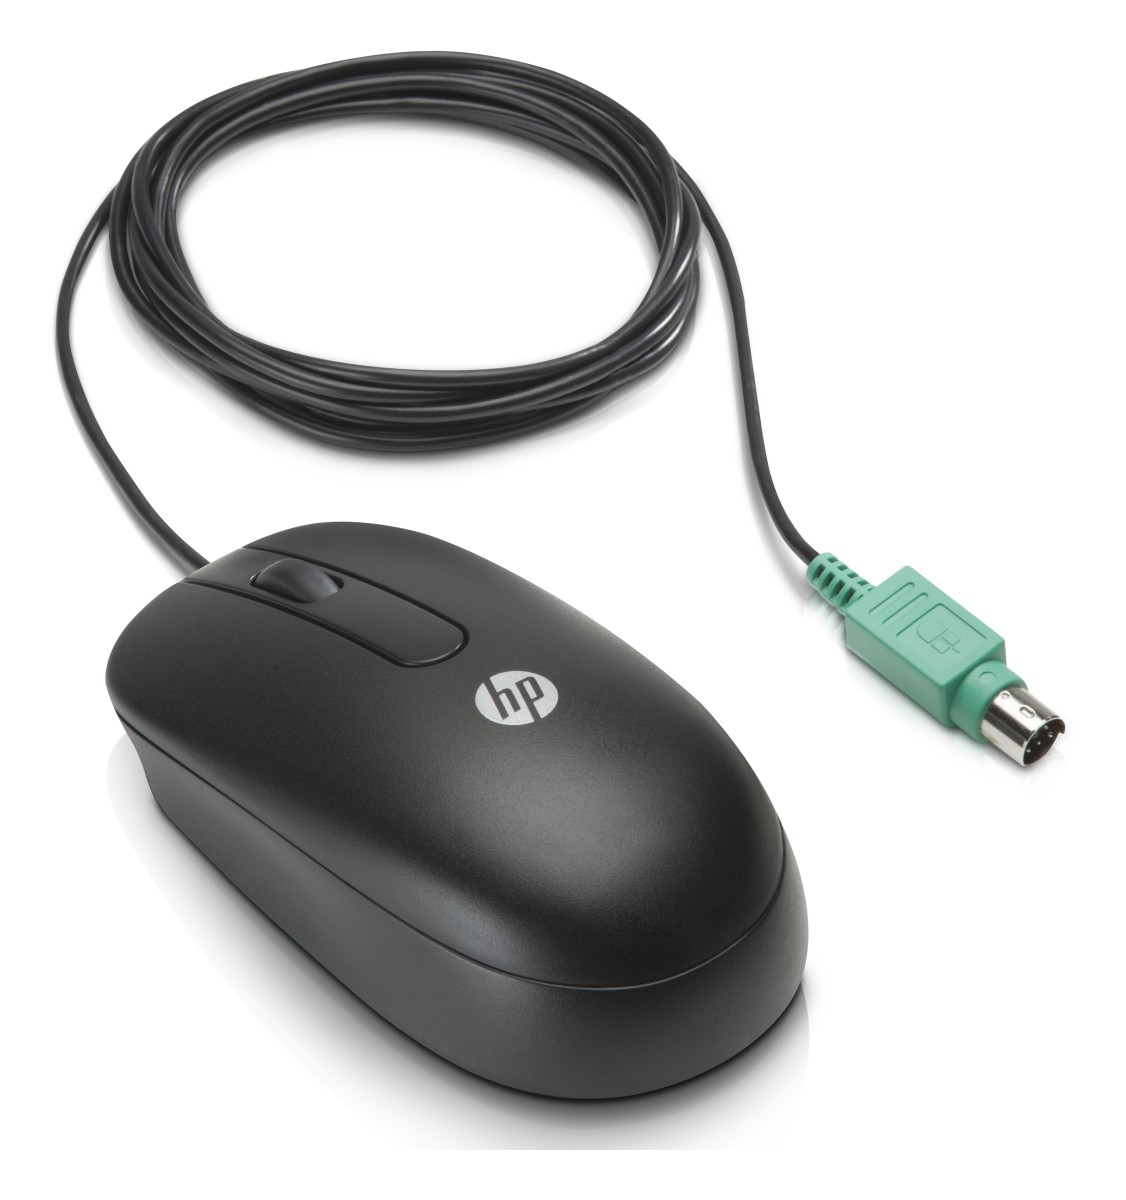 PS/2 myš HP (QY775AA)